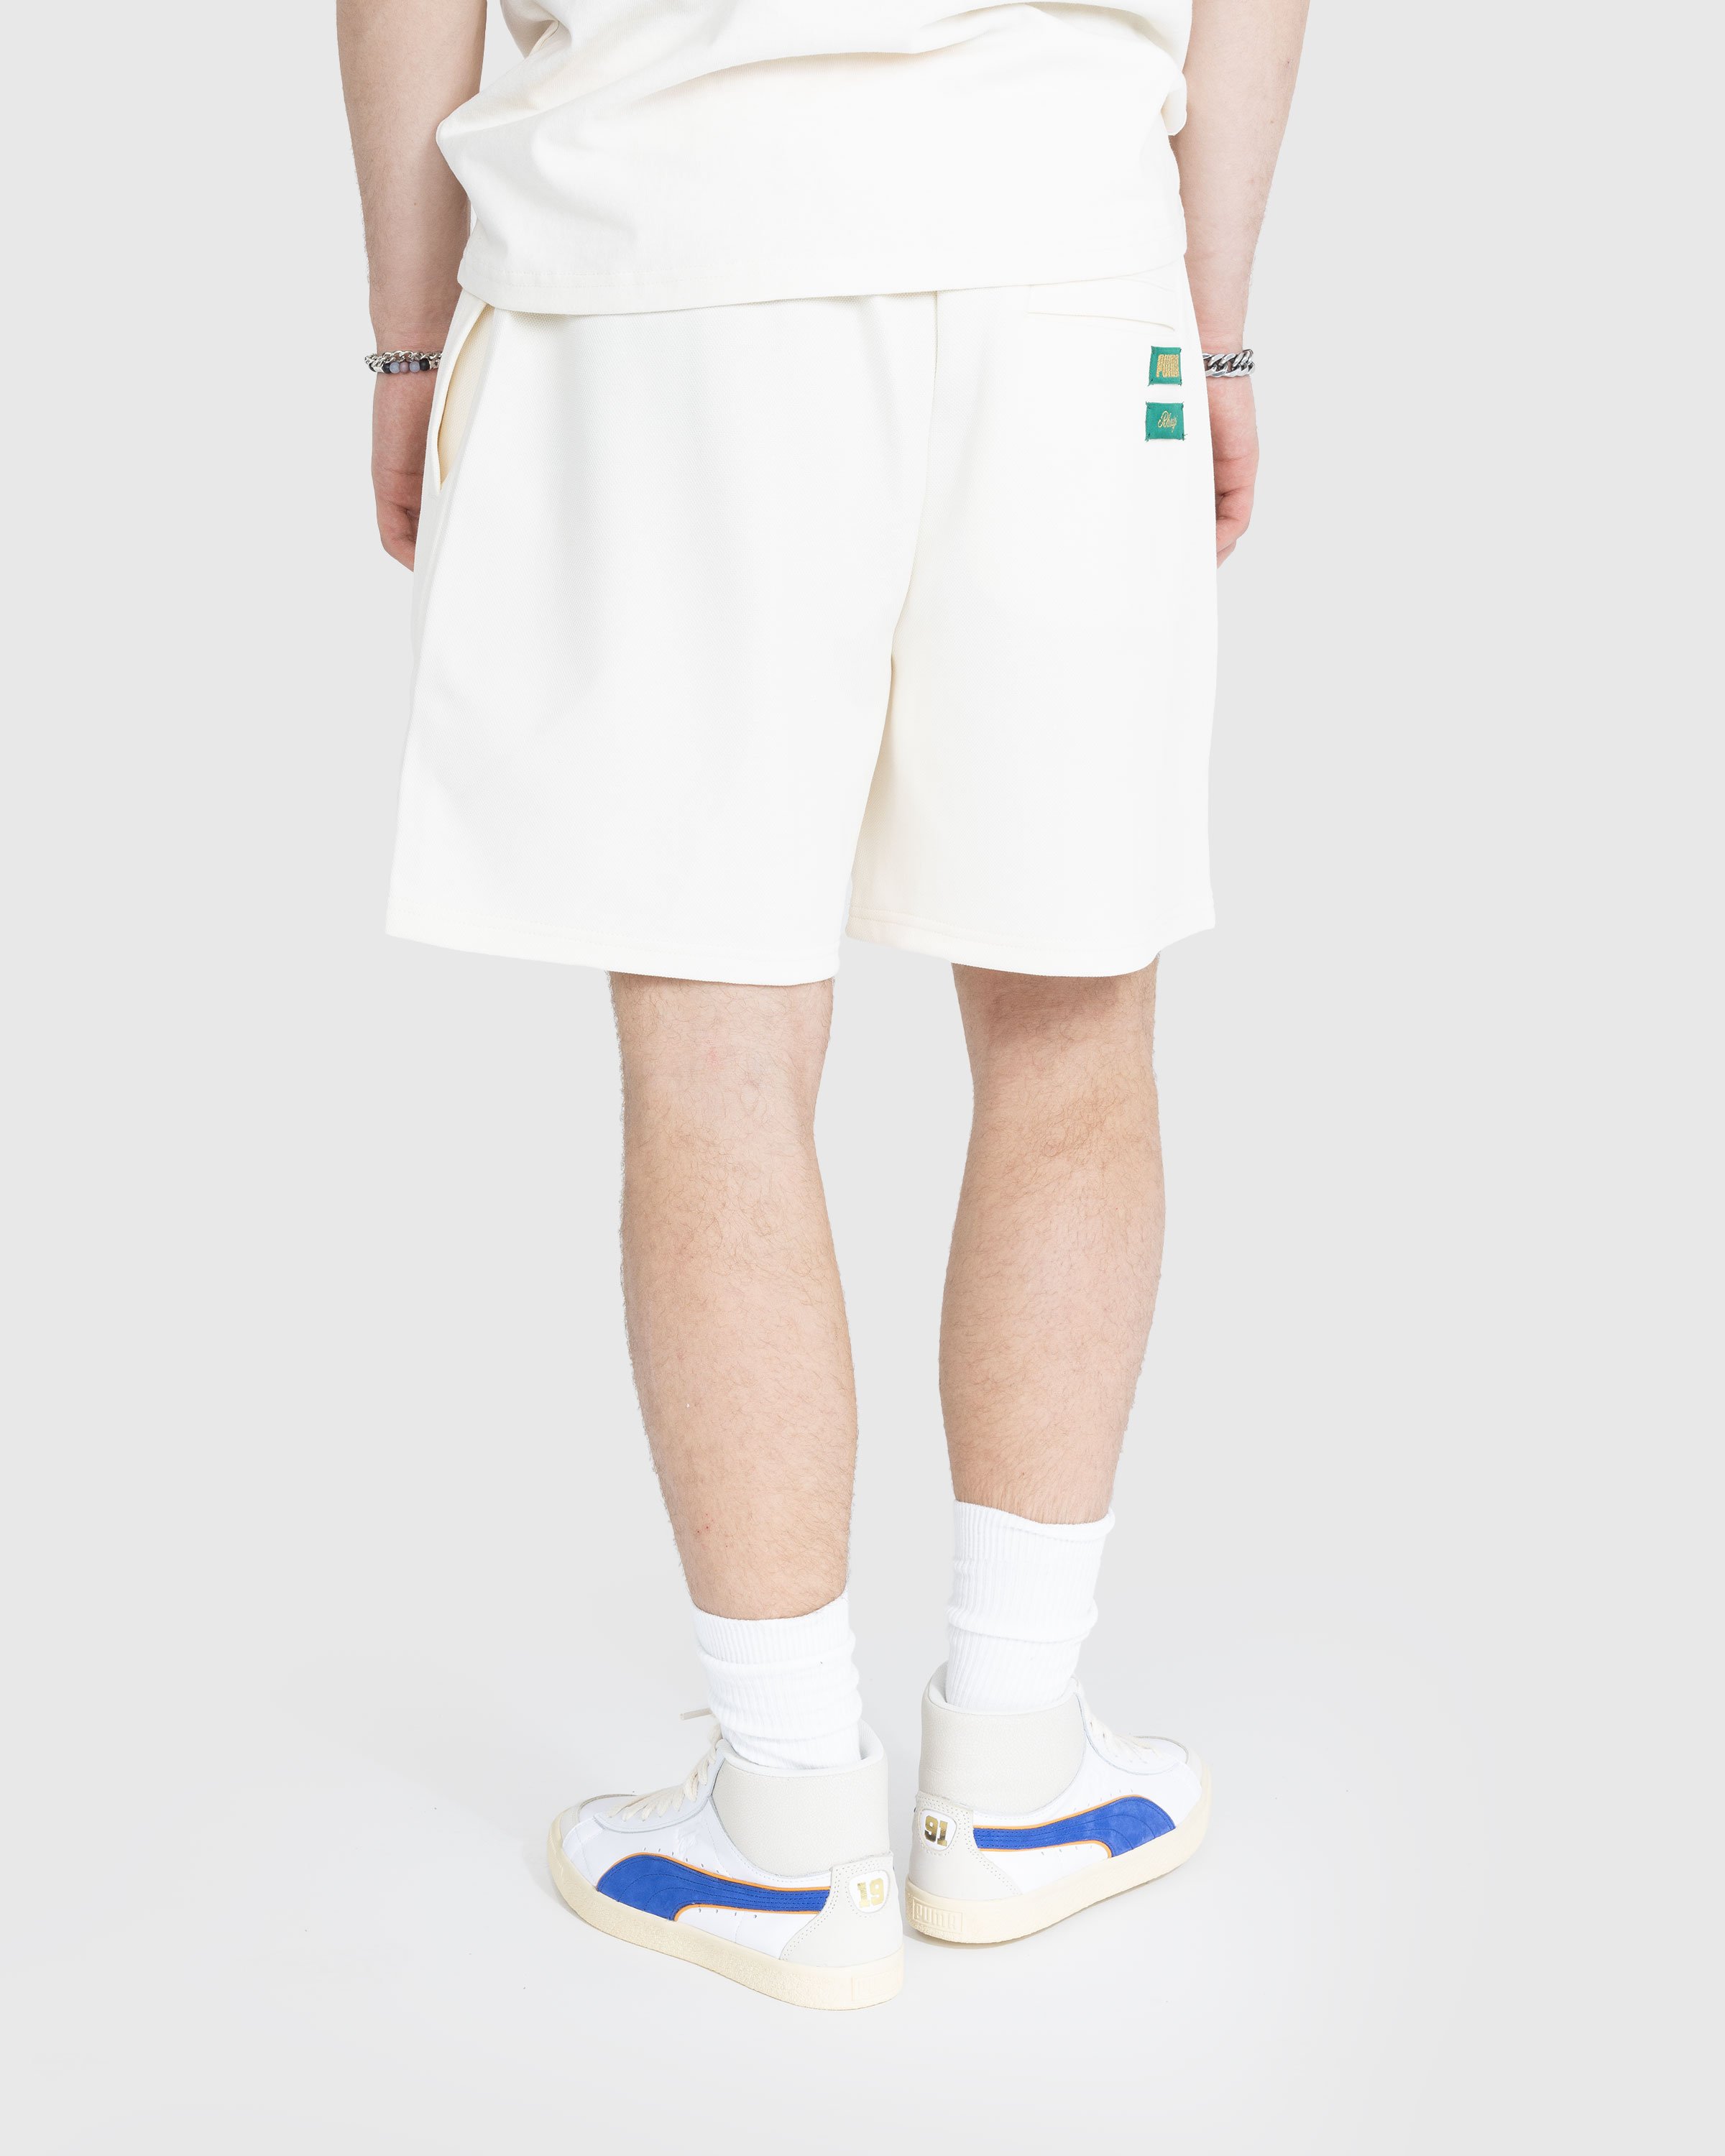 Puma x Rhuigi - Basketball Shorts White - Clothing - White - Image 3